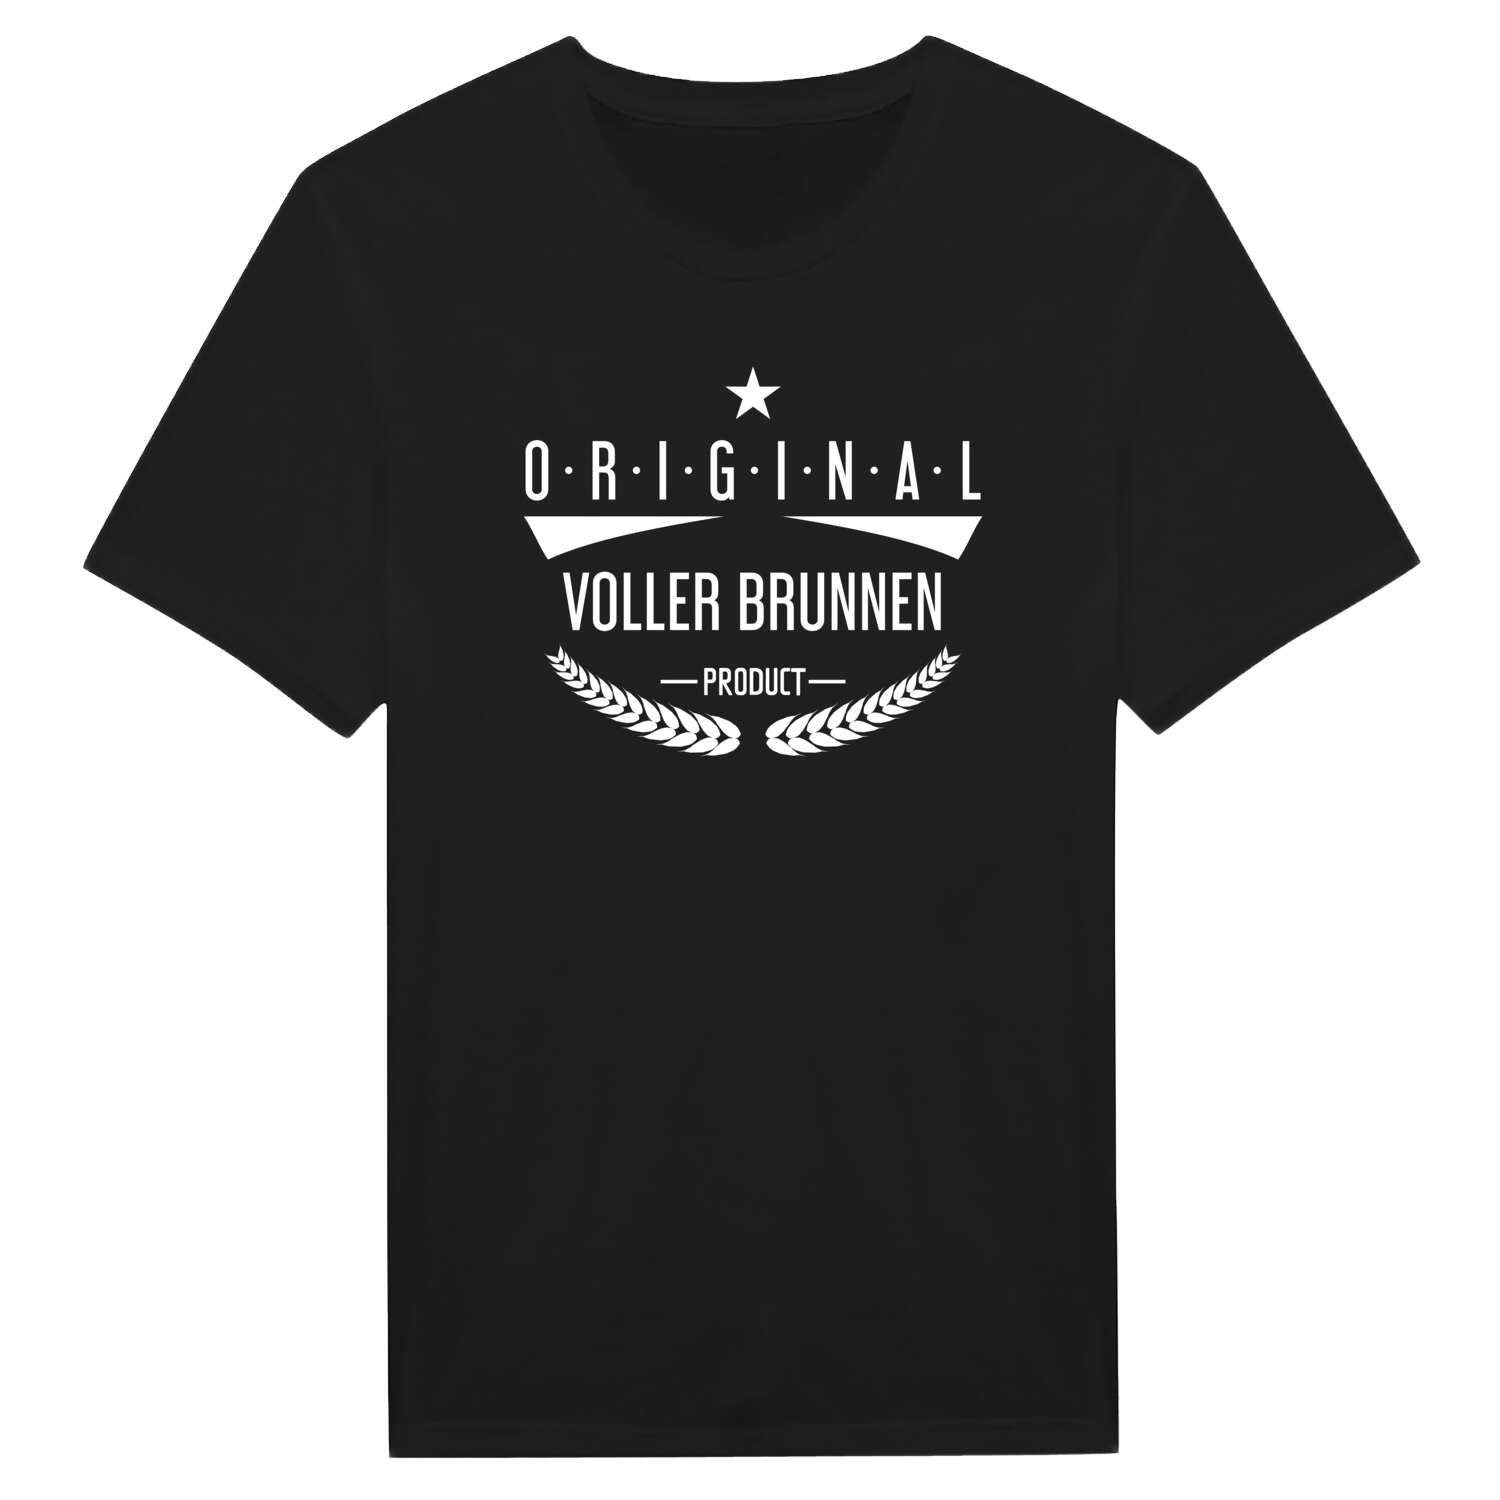 Voller Brunnen T-Shirt »Original Product«